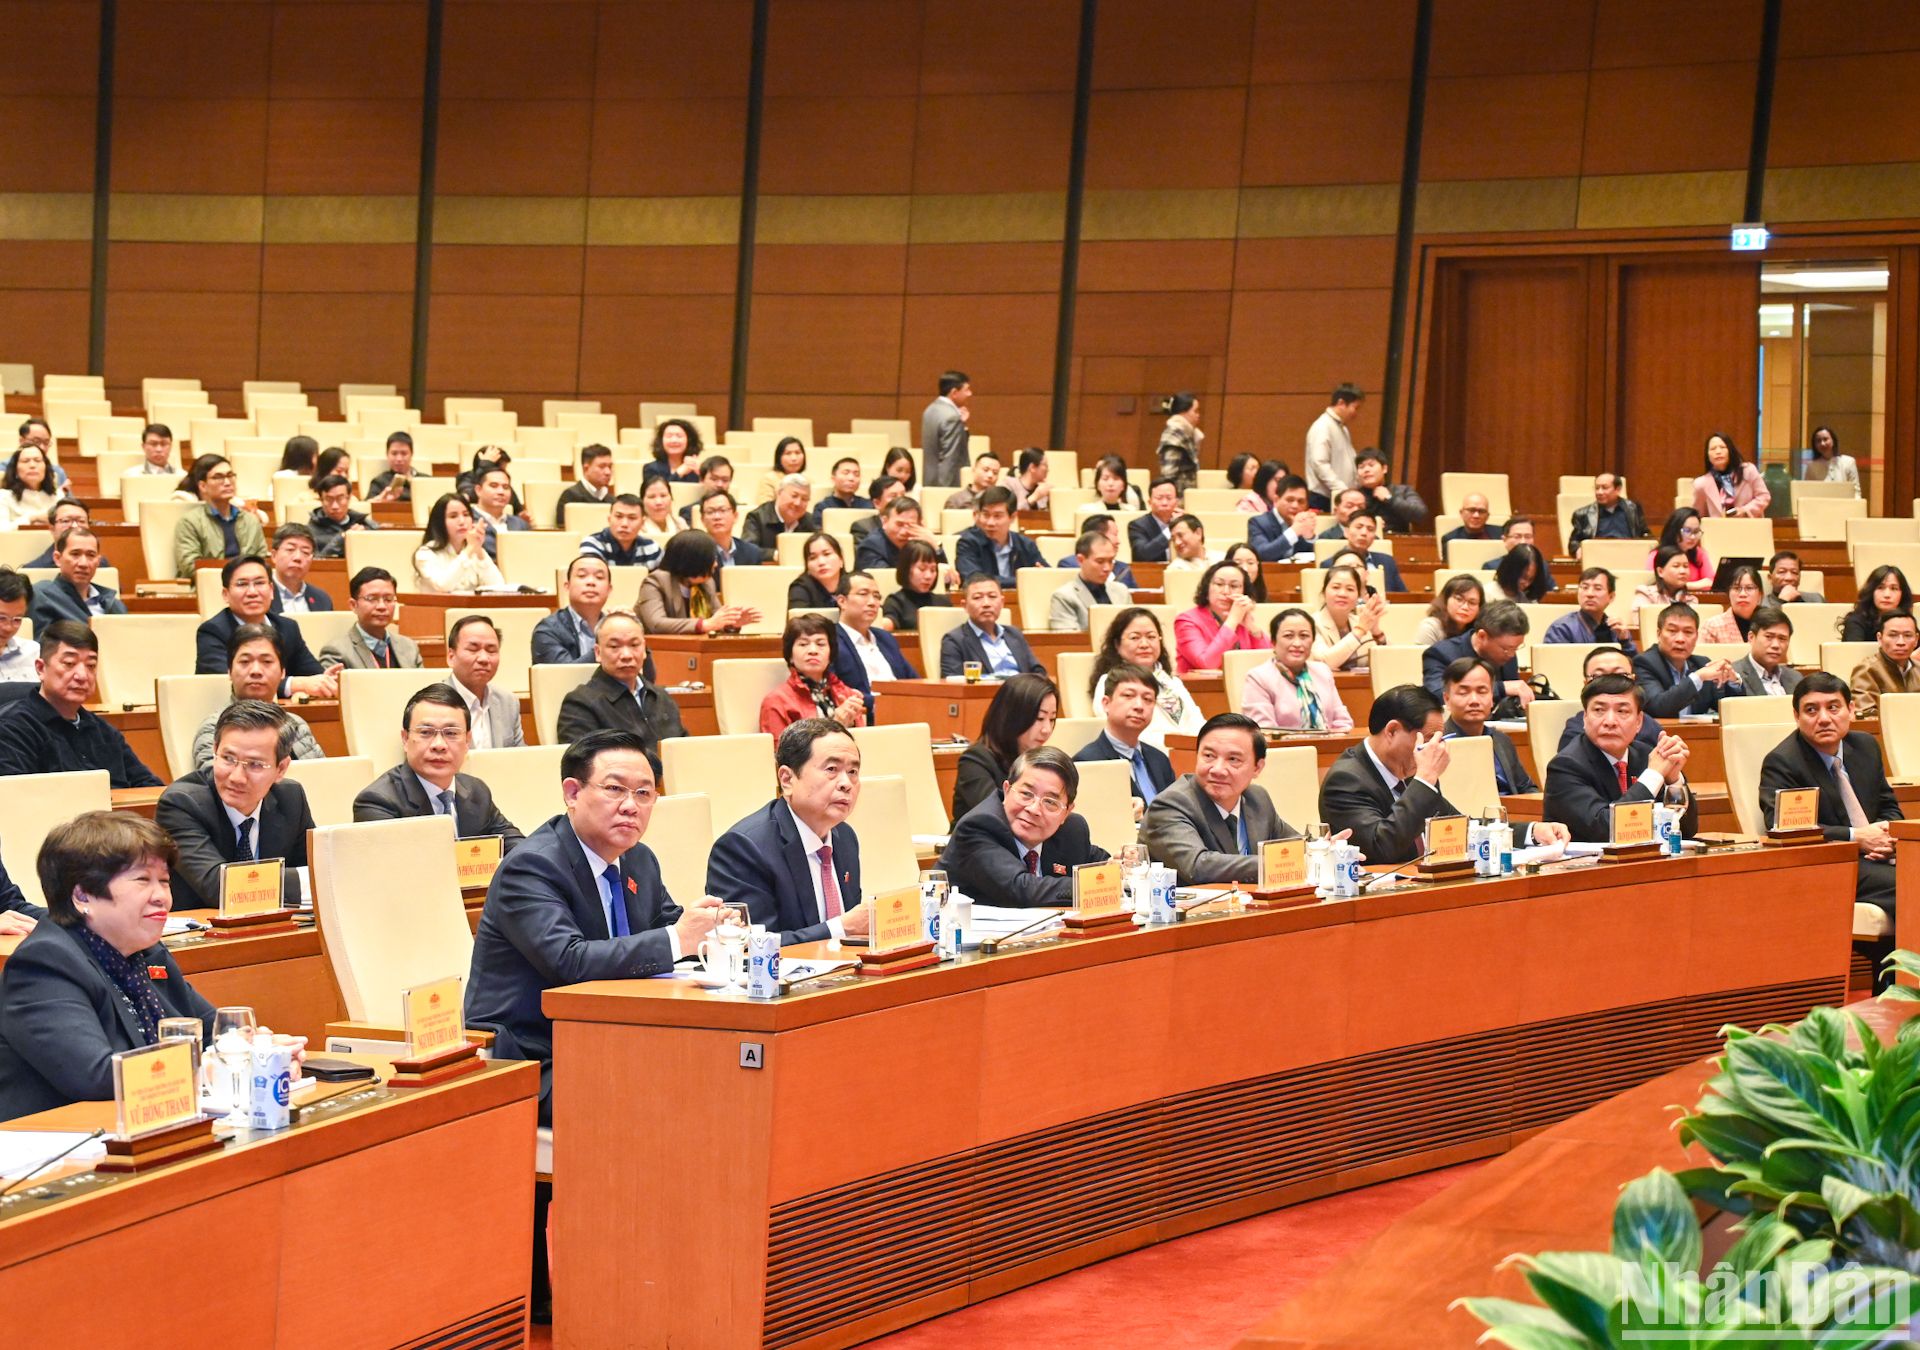 Chủ tịch Quốc hội Vương Đình Huệ cùng các Phó Chủ tịch Quốc hội và các đại biểu dự hội nghị.